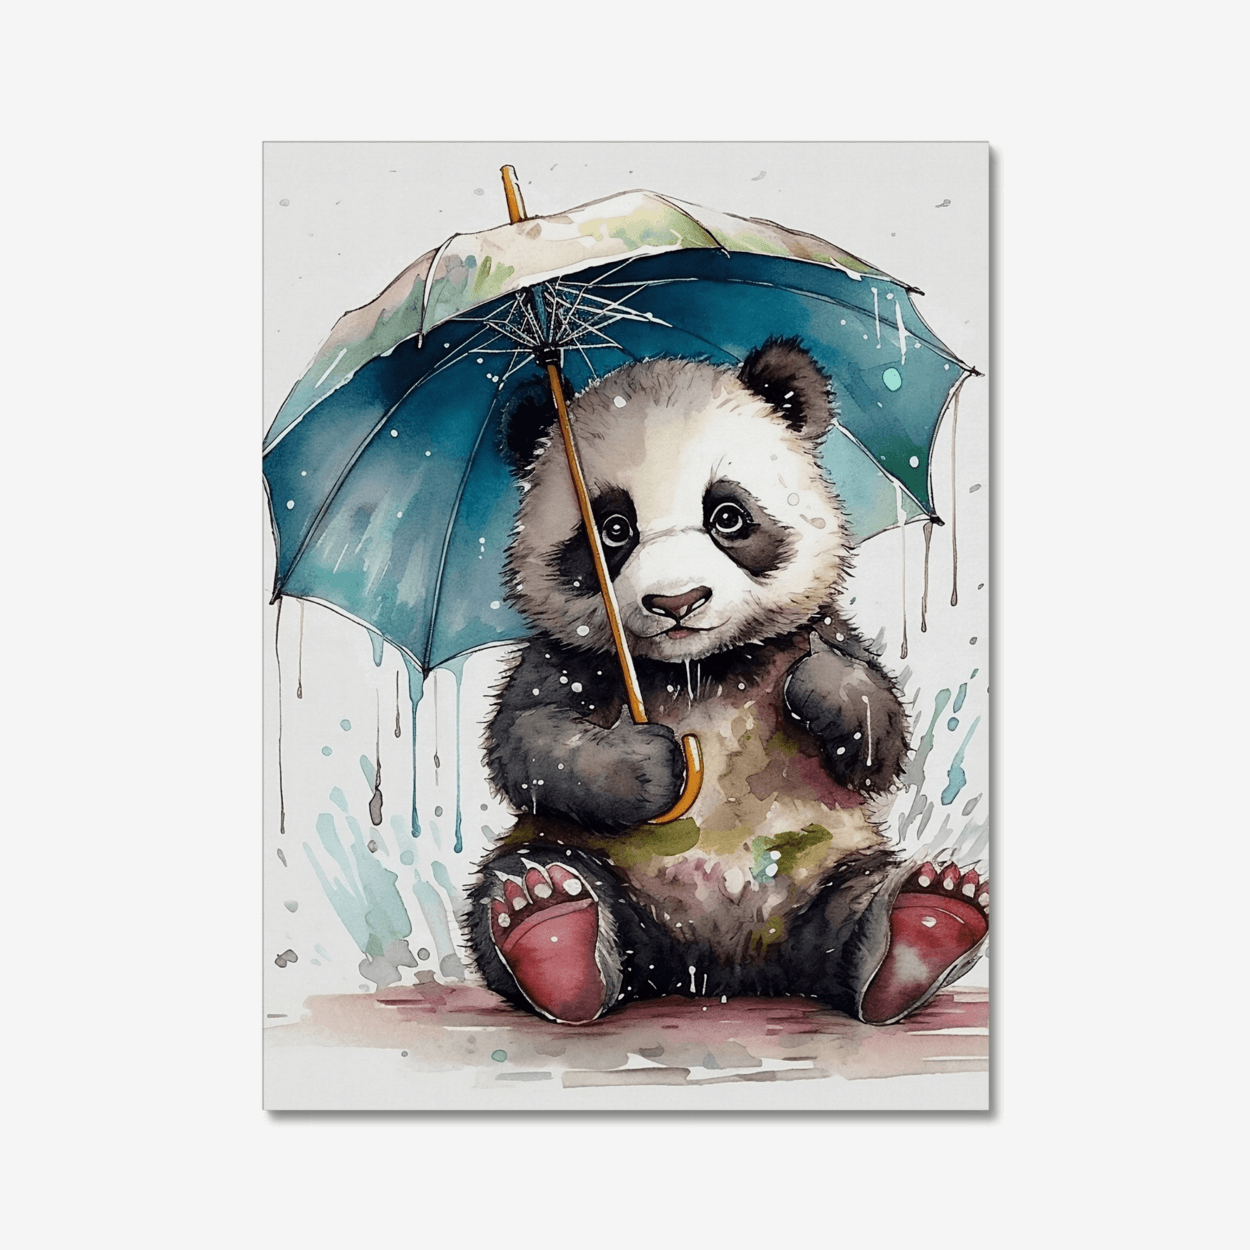 Panda under the umbrella